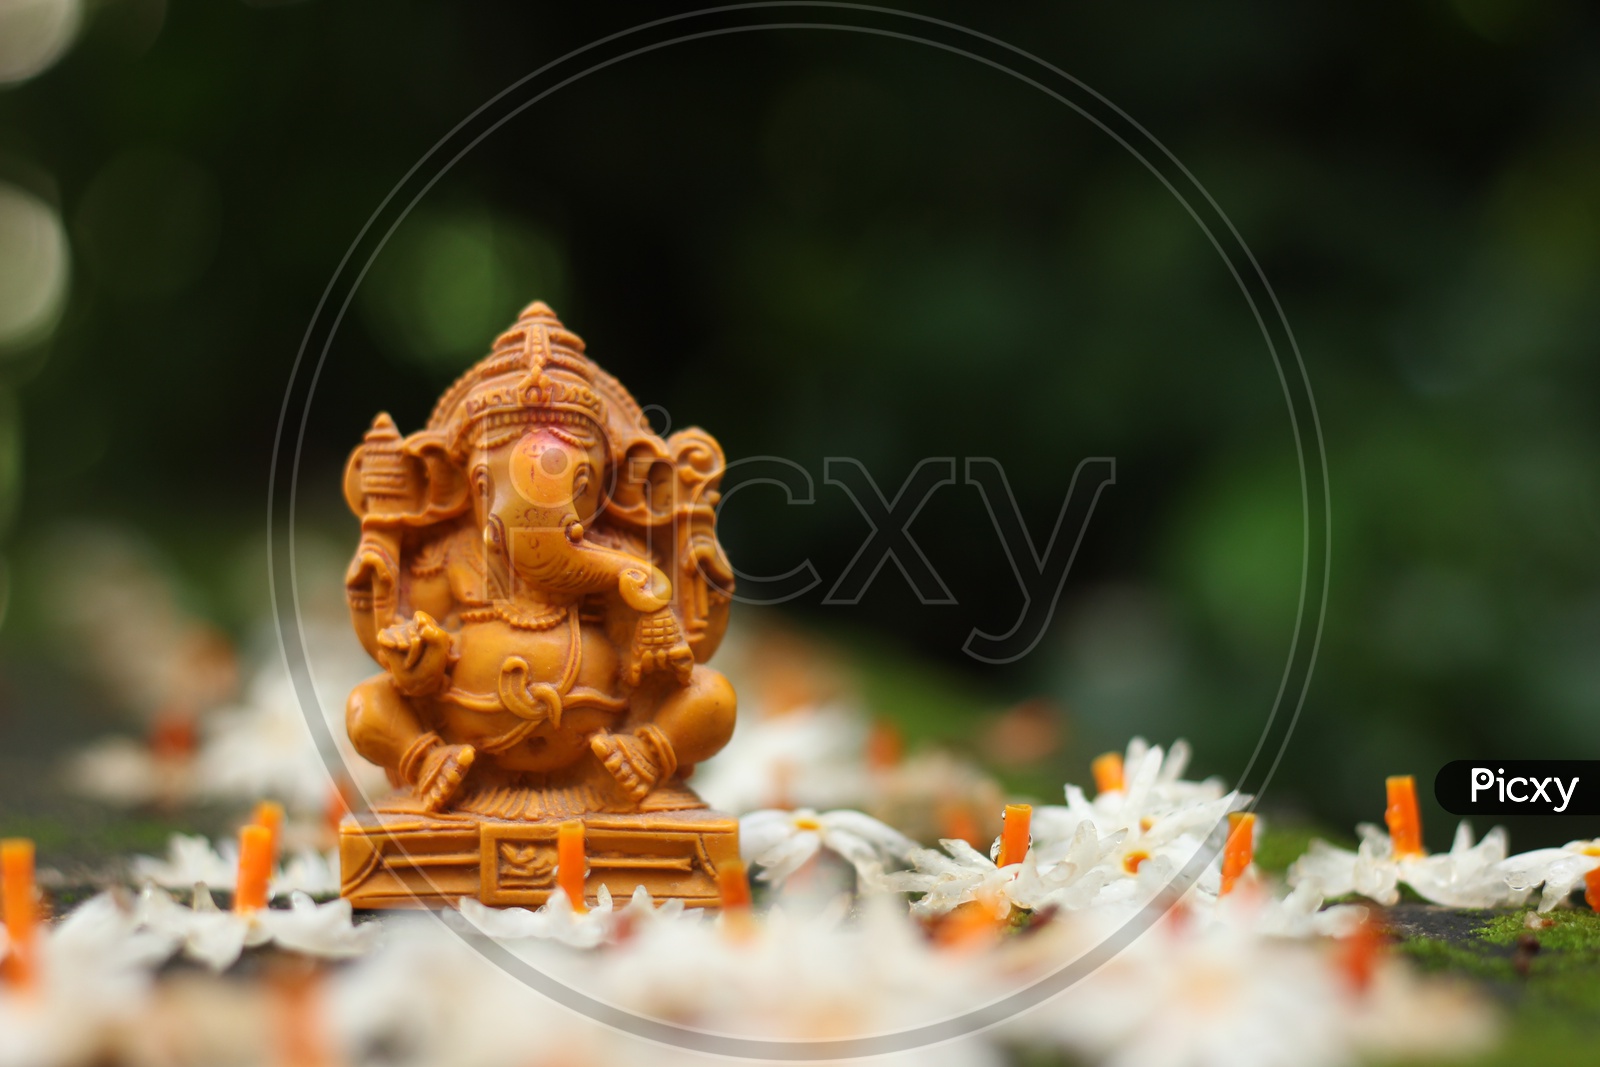 Lord Ganapathi or Ganesh Idol